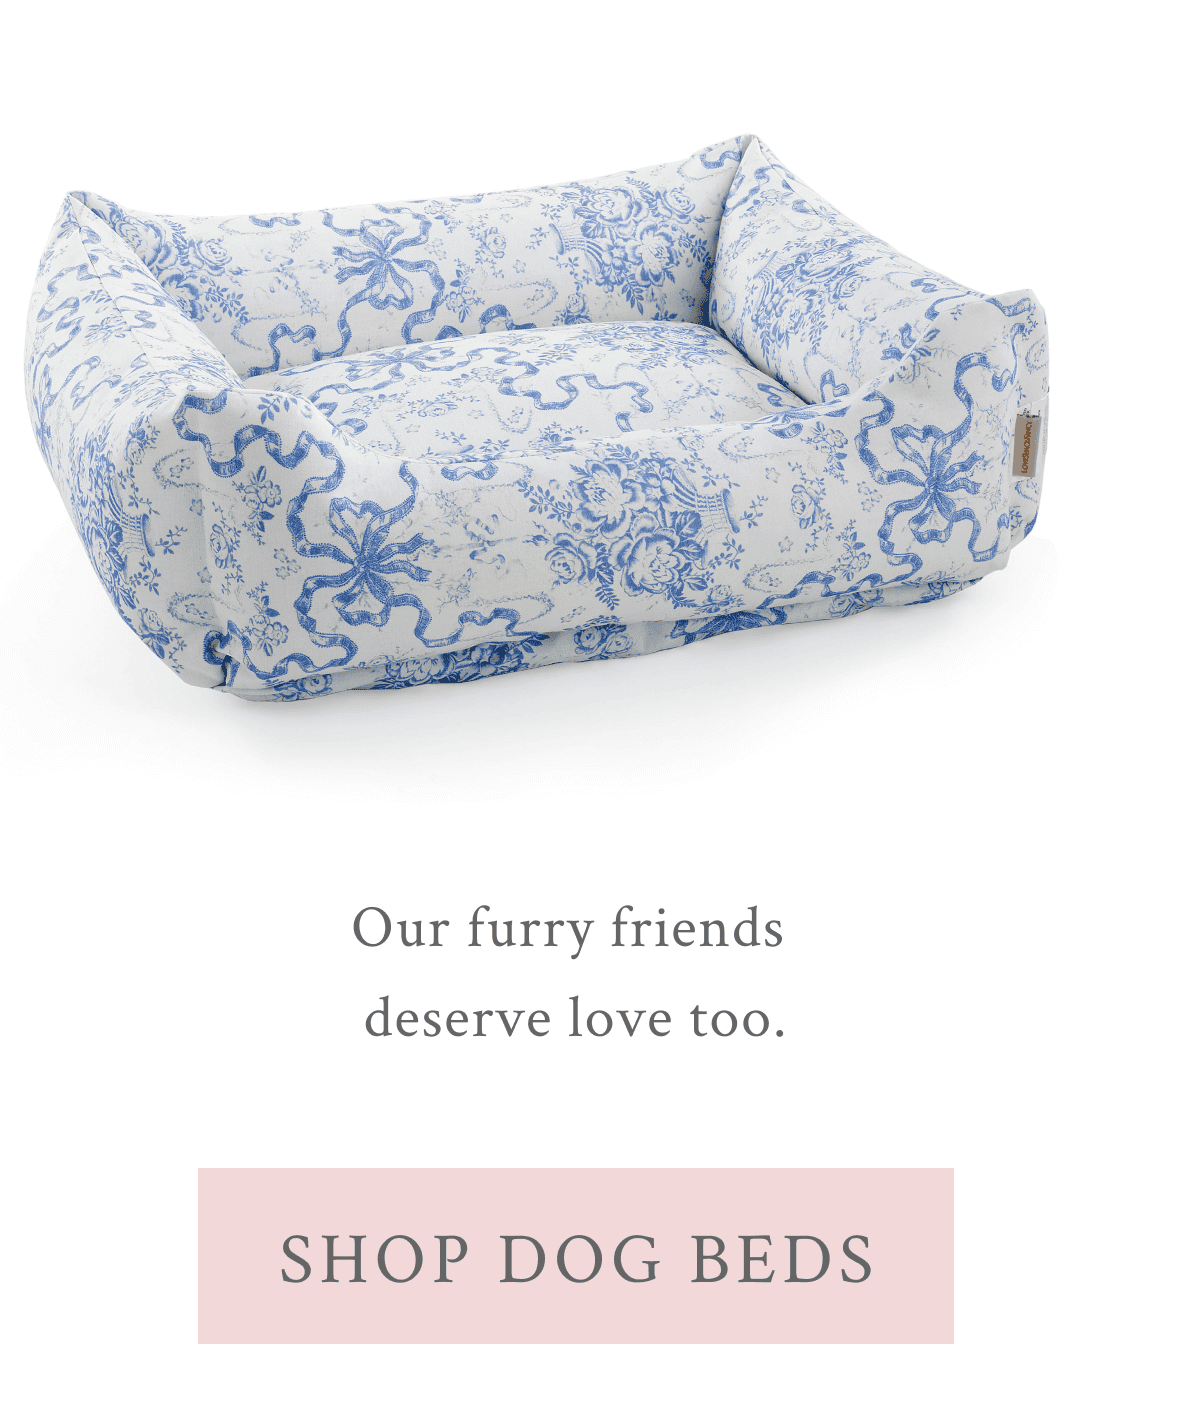 Shop dog beds